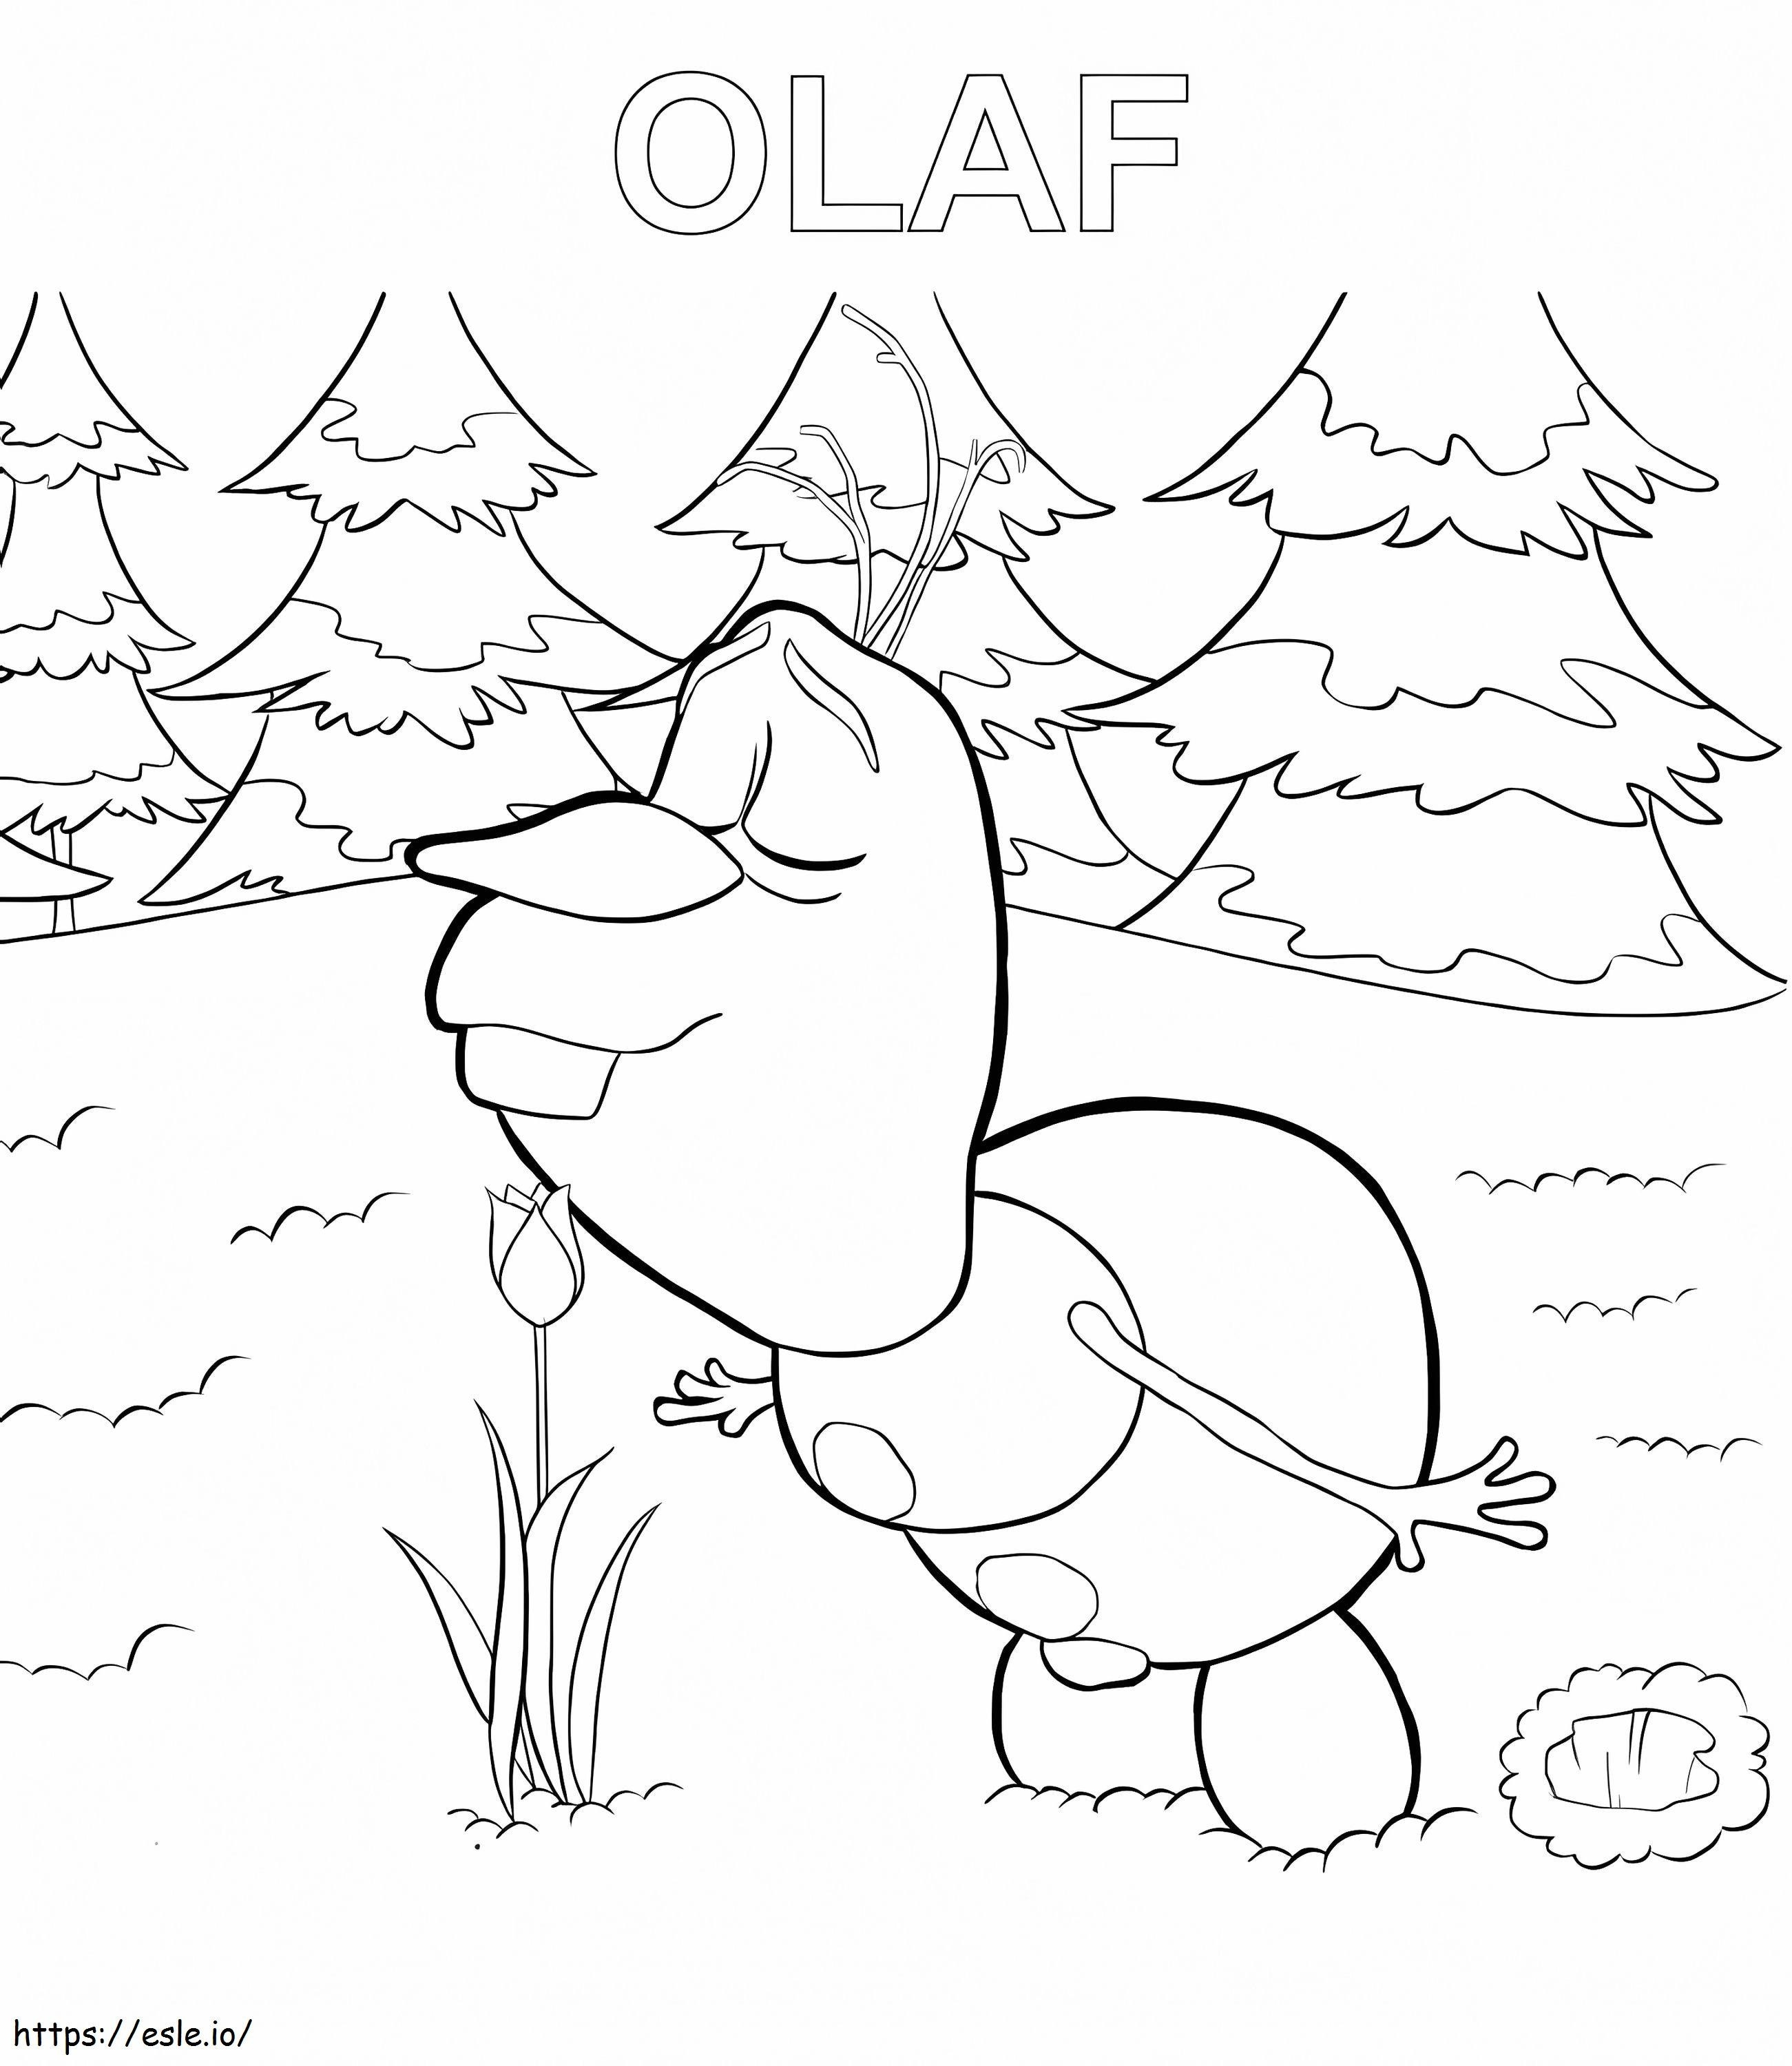 Olaf Con Flor coloring page